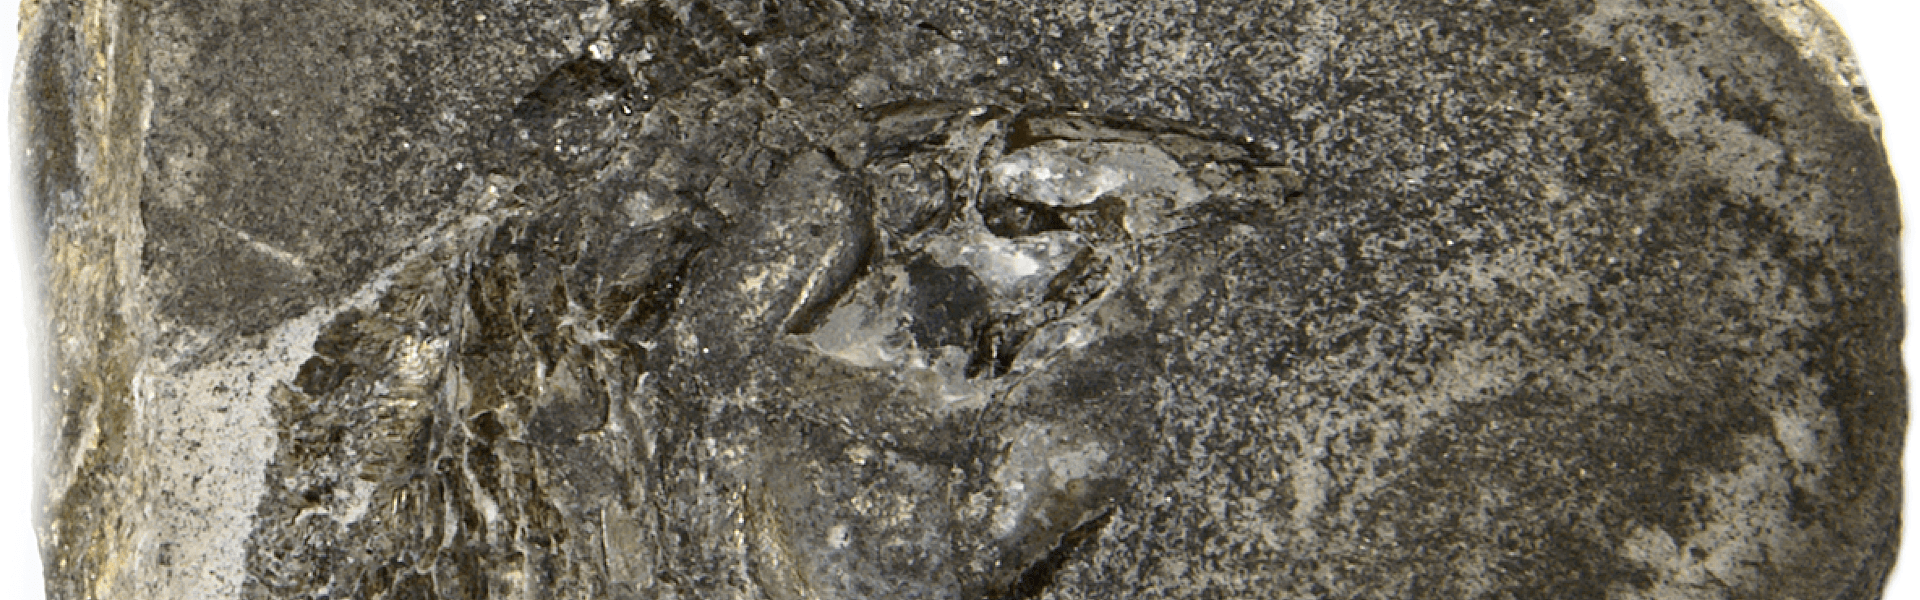 Fósseis de peixes de 290 milhões de anos são encontrados com extremo grau de preservação do cérebro